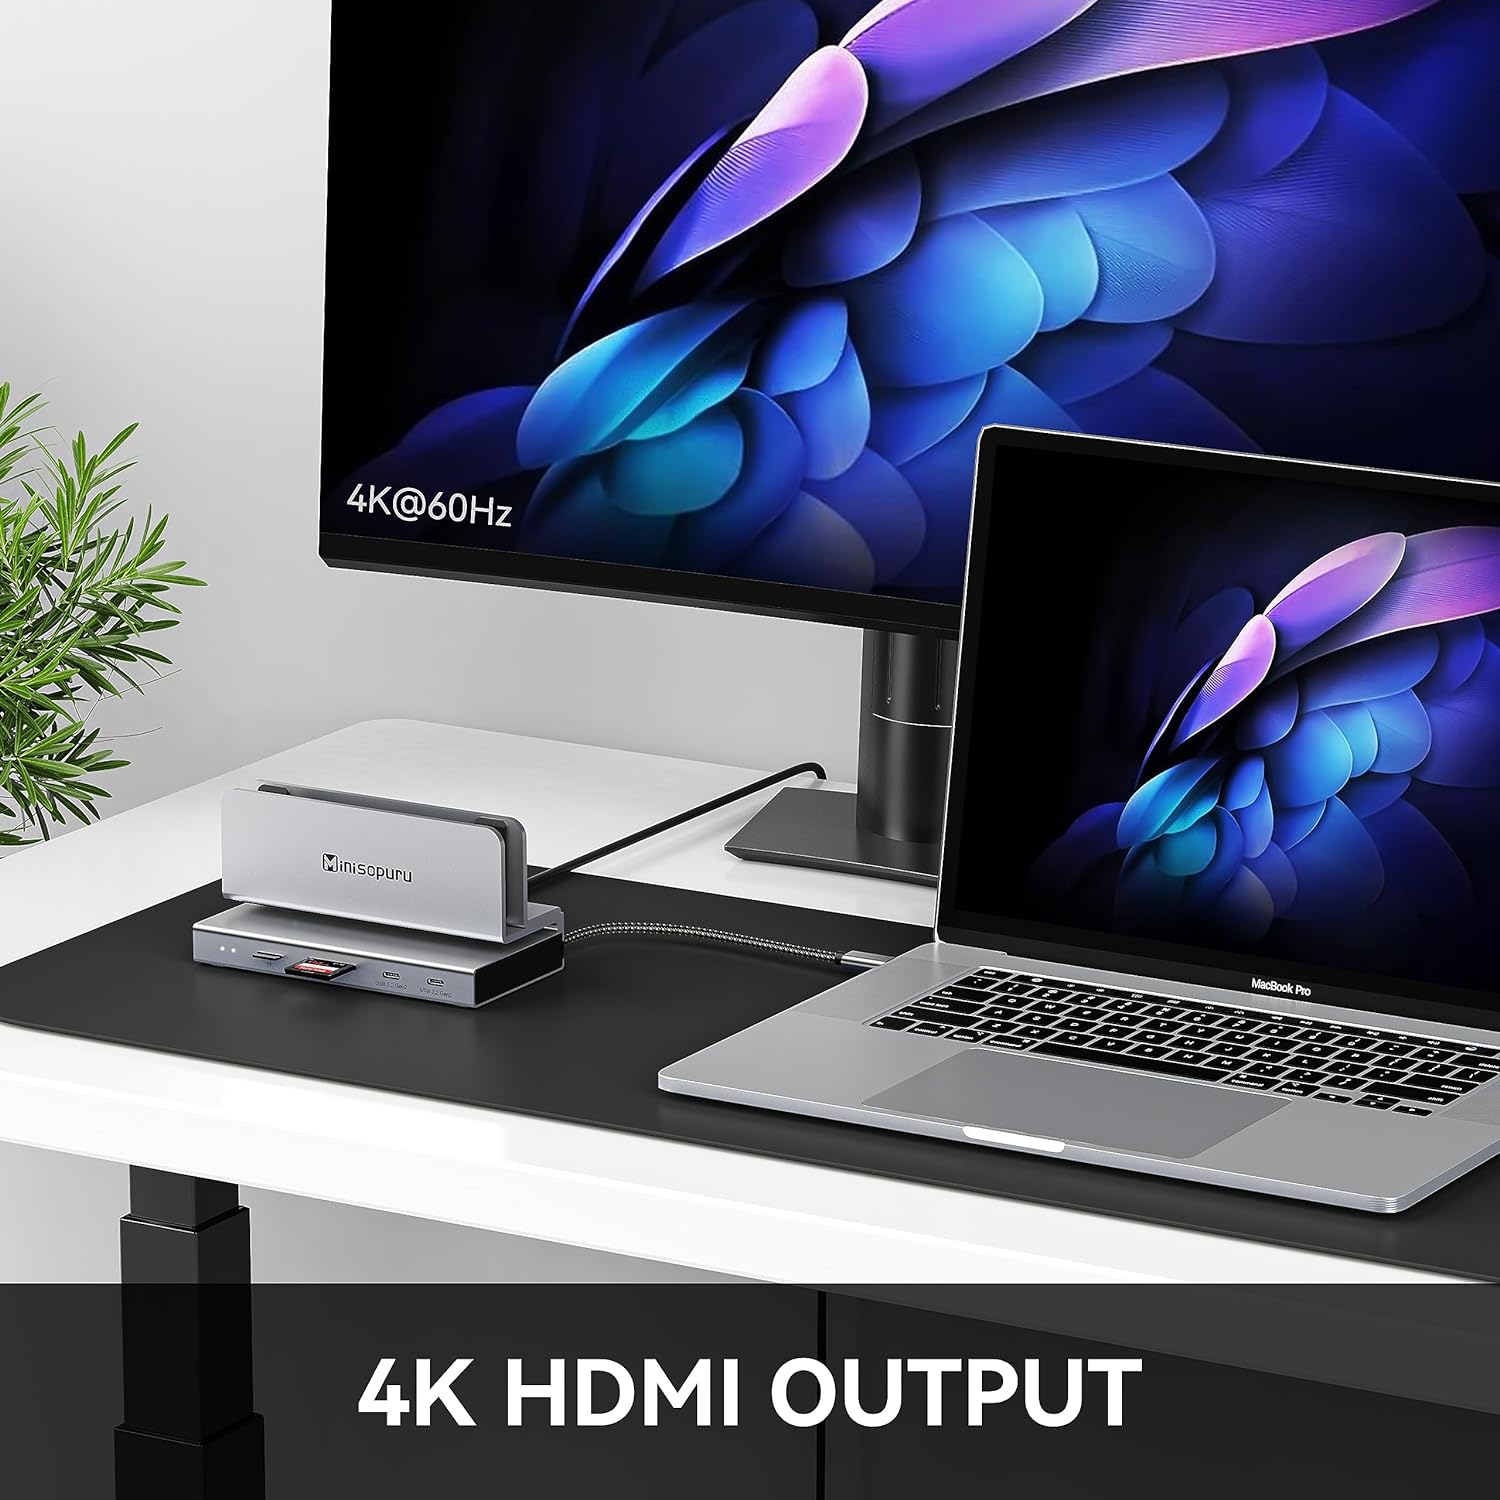 4k HDMI OUTPUT